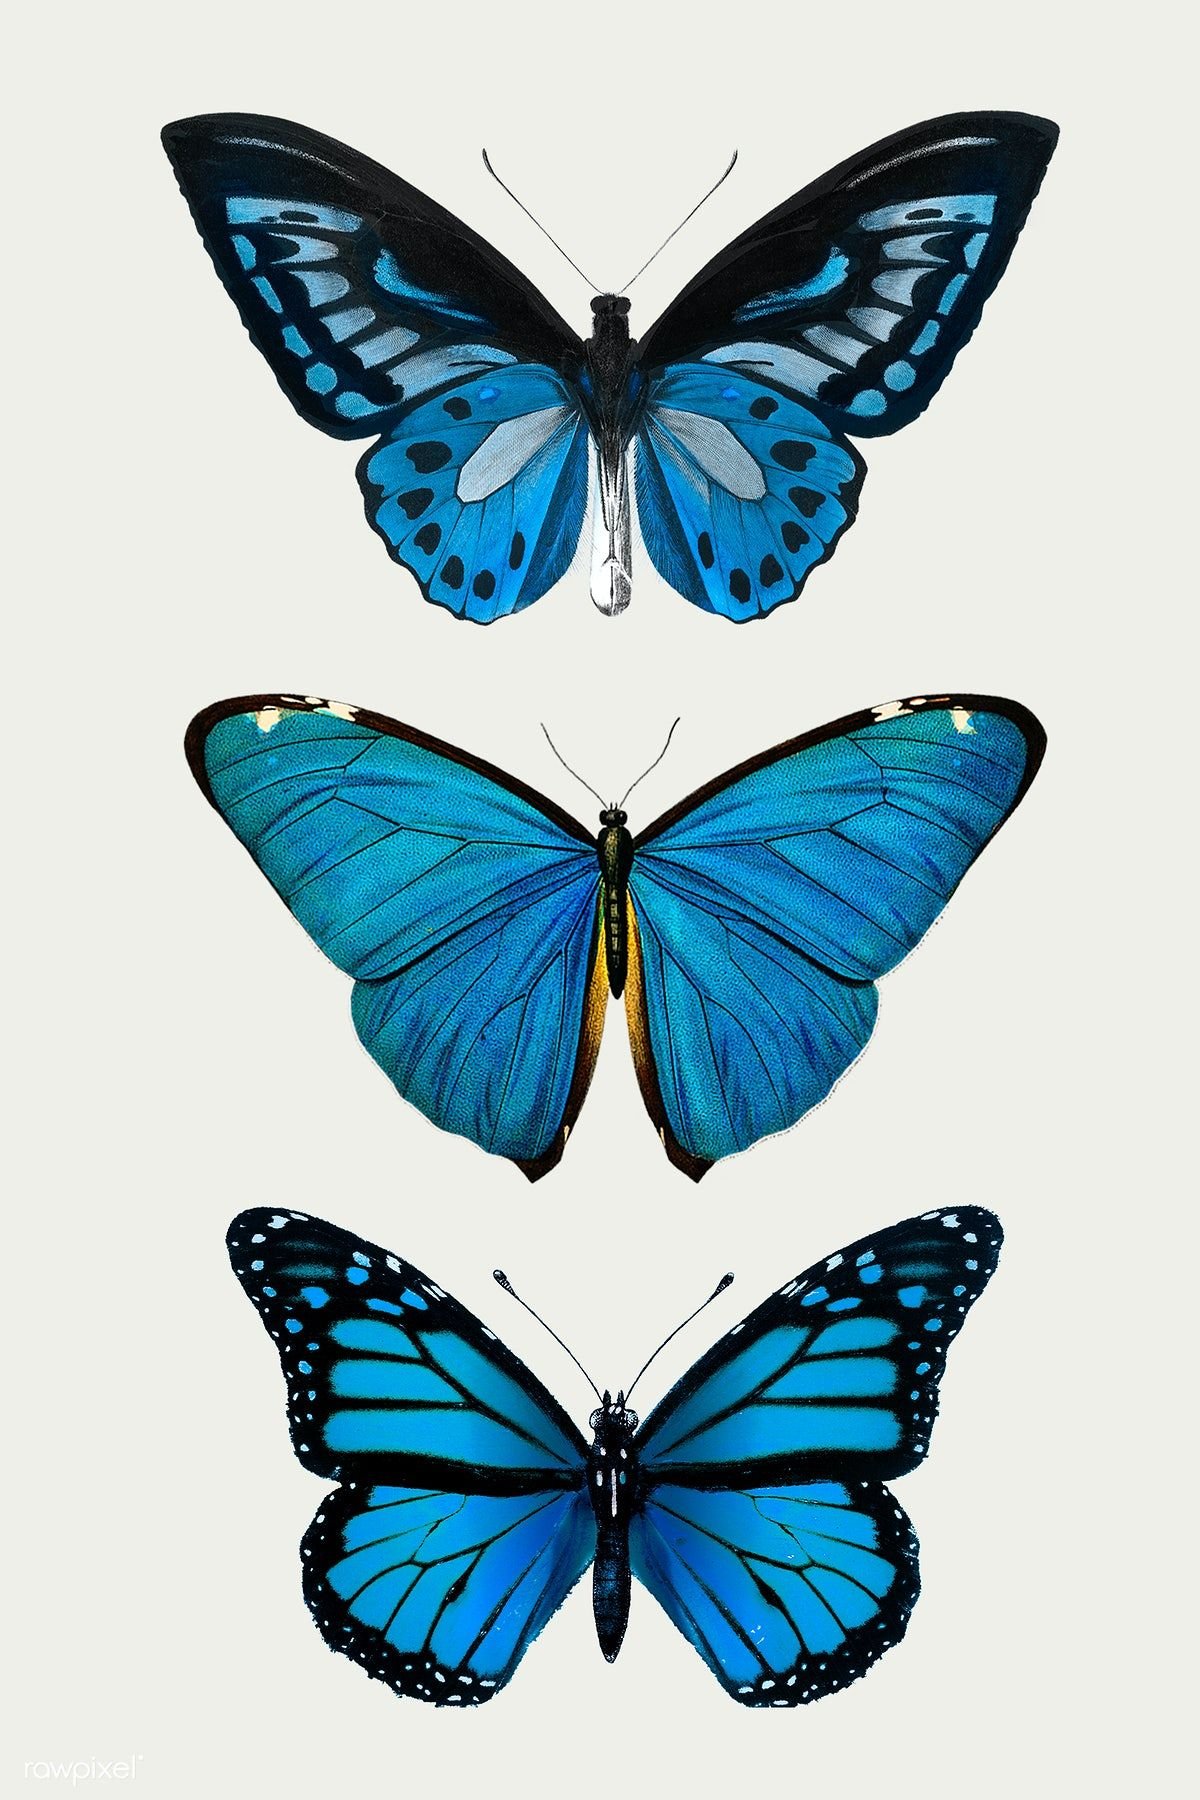 Blue Butterfly Drawing Best